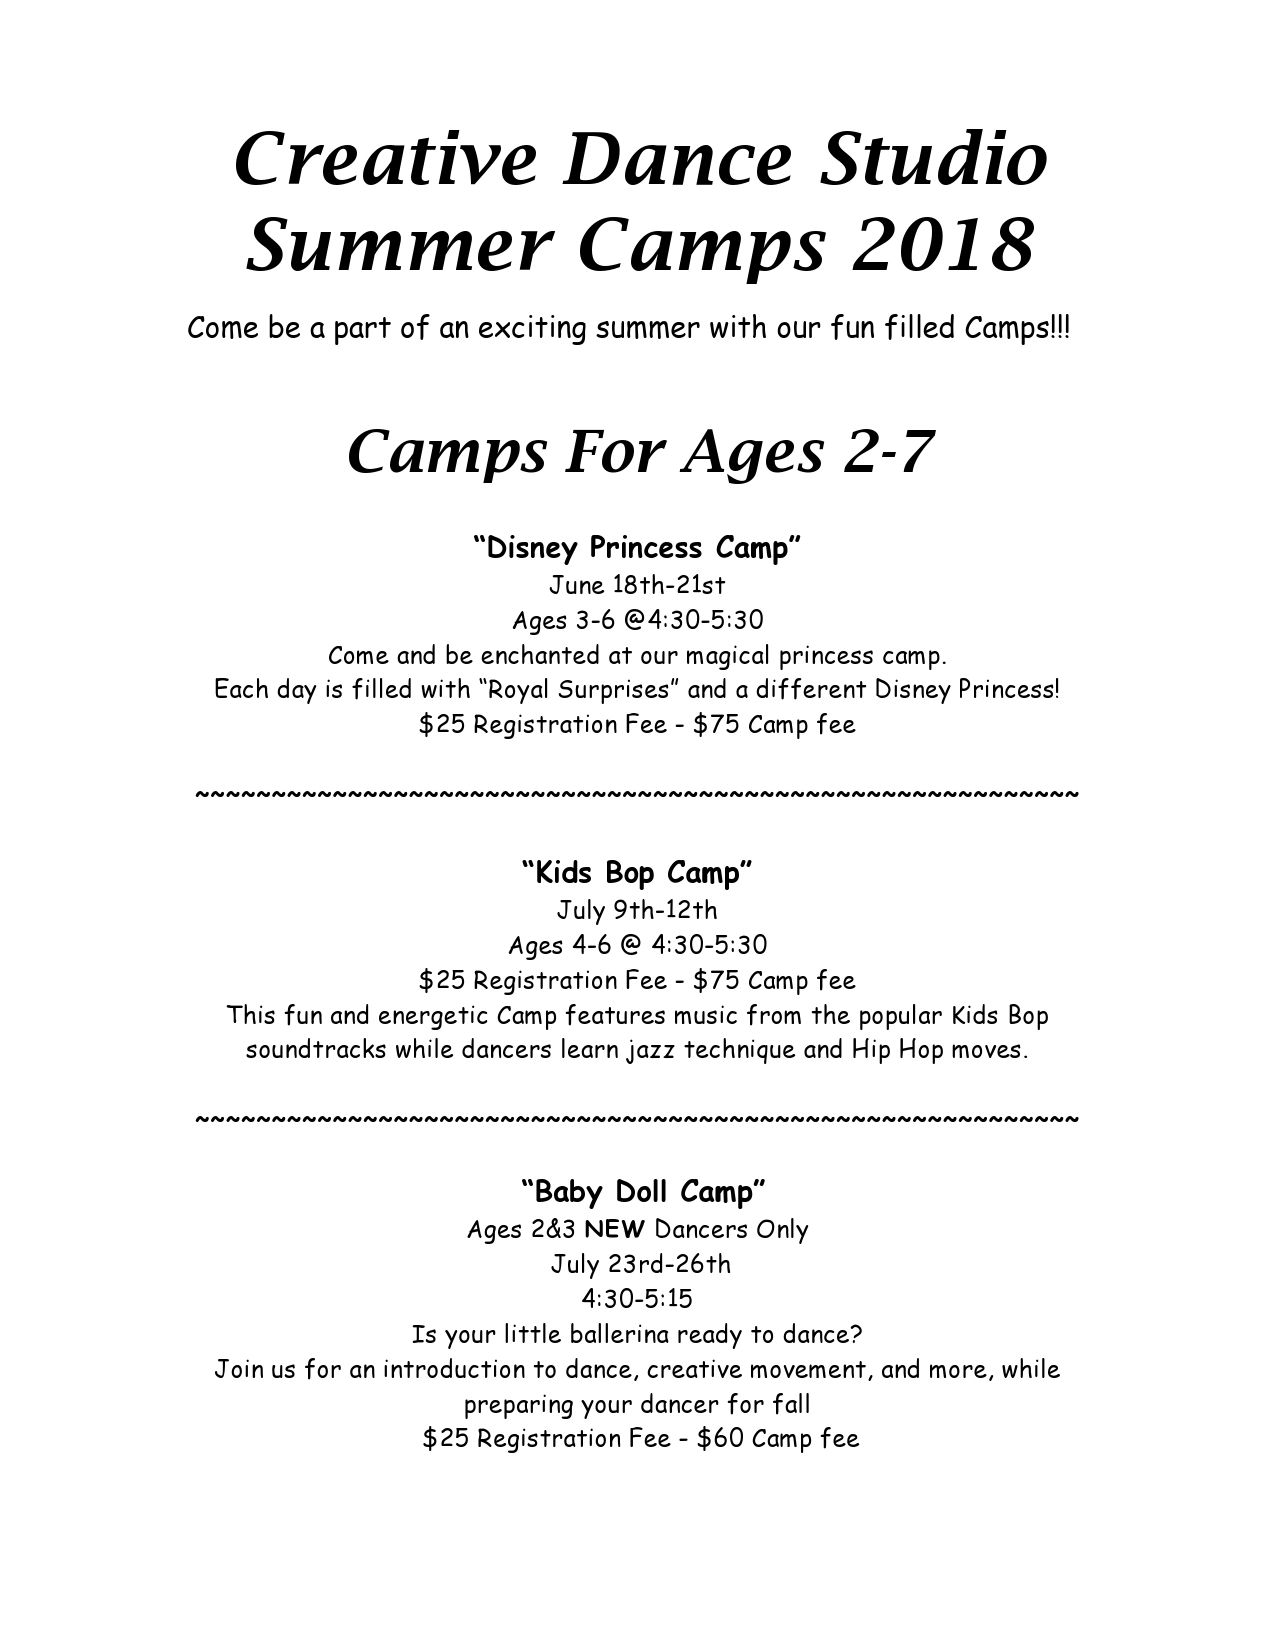 Summer Camps Creative Dance Studio